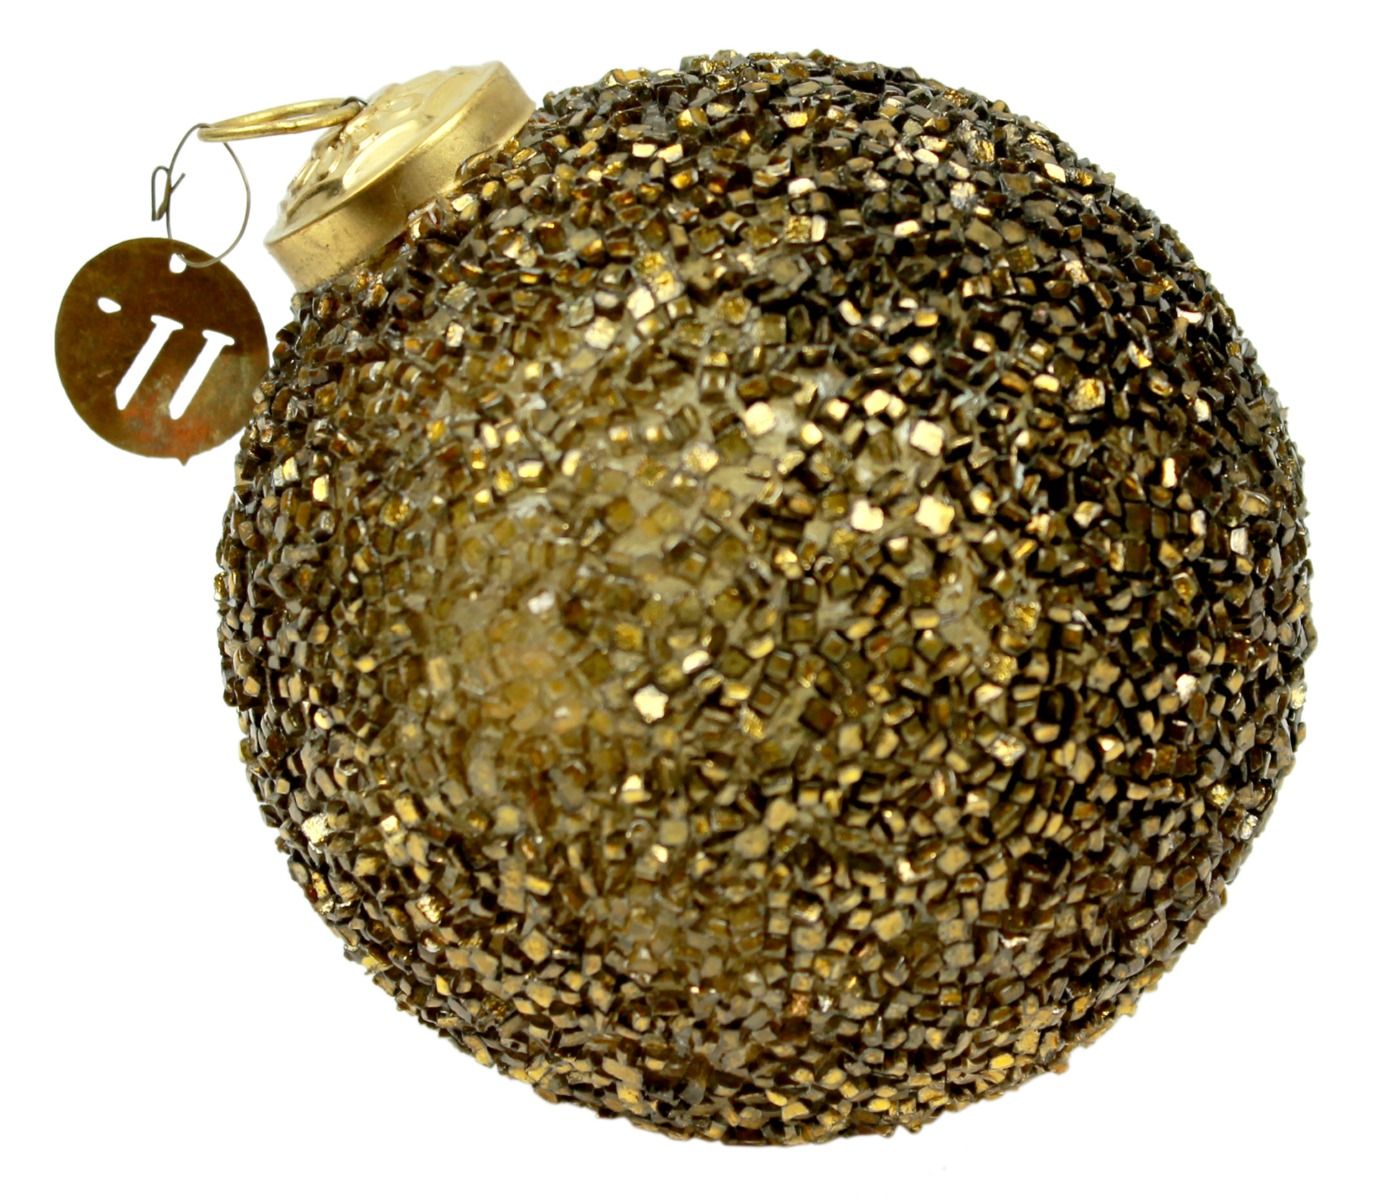 Christmas ball shiny gold